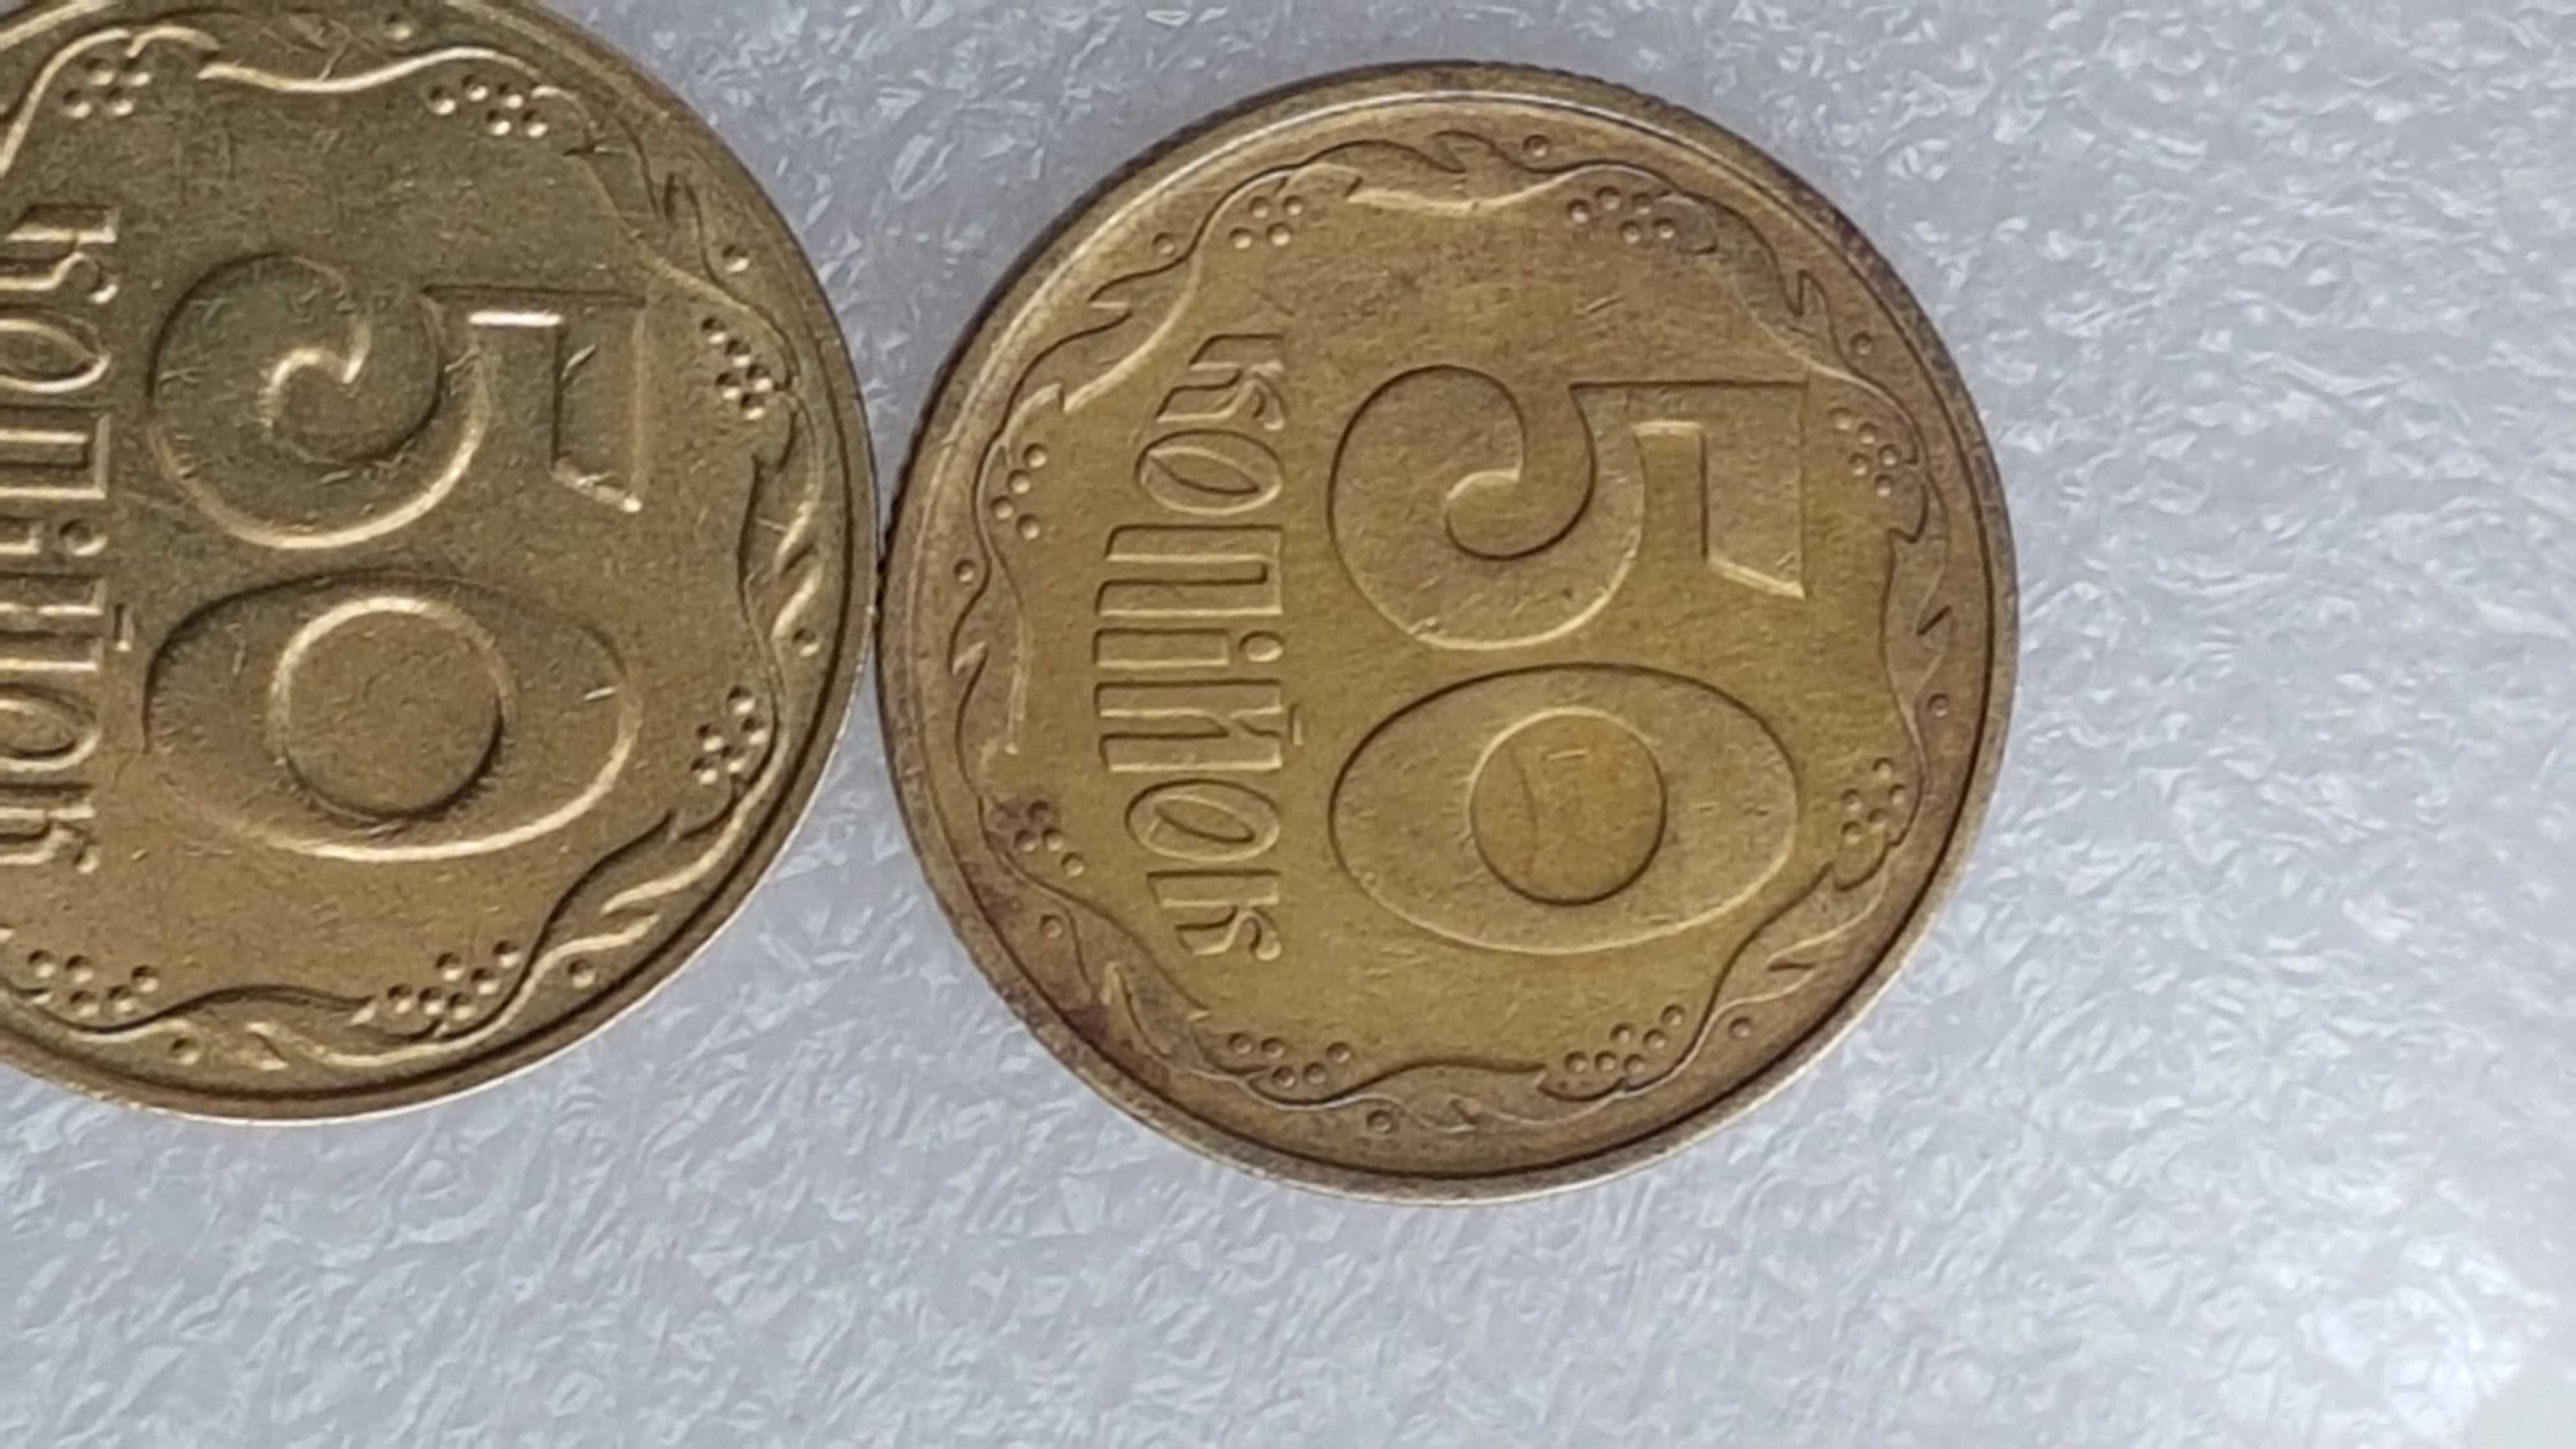 Moneta 50 kopiejek 1992 Ukraina - mały nakład.
rzadki znaczek.